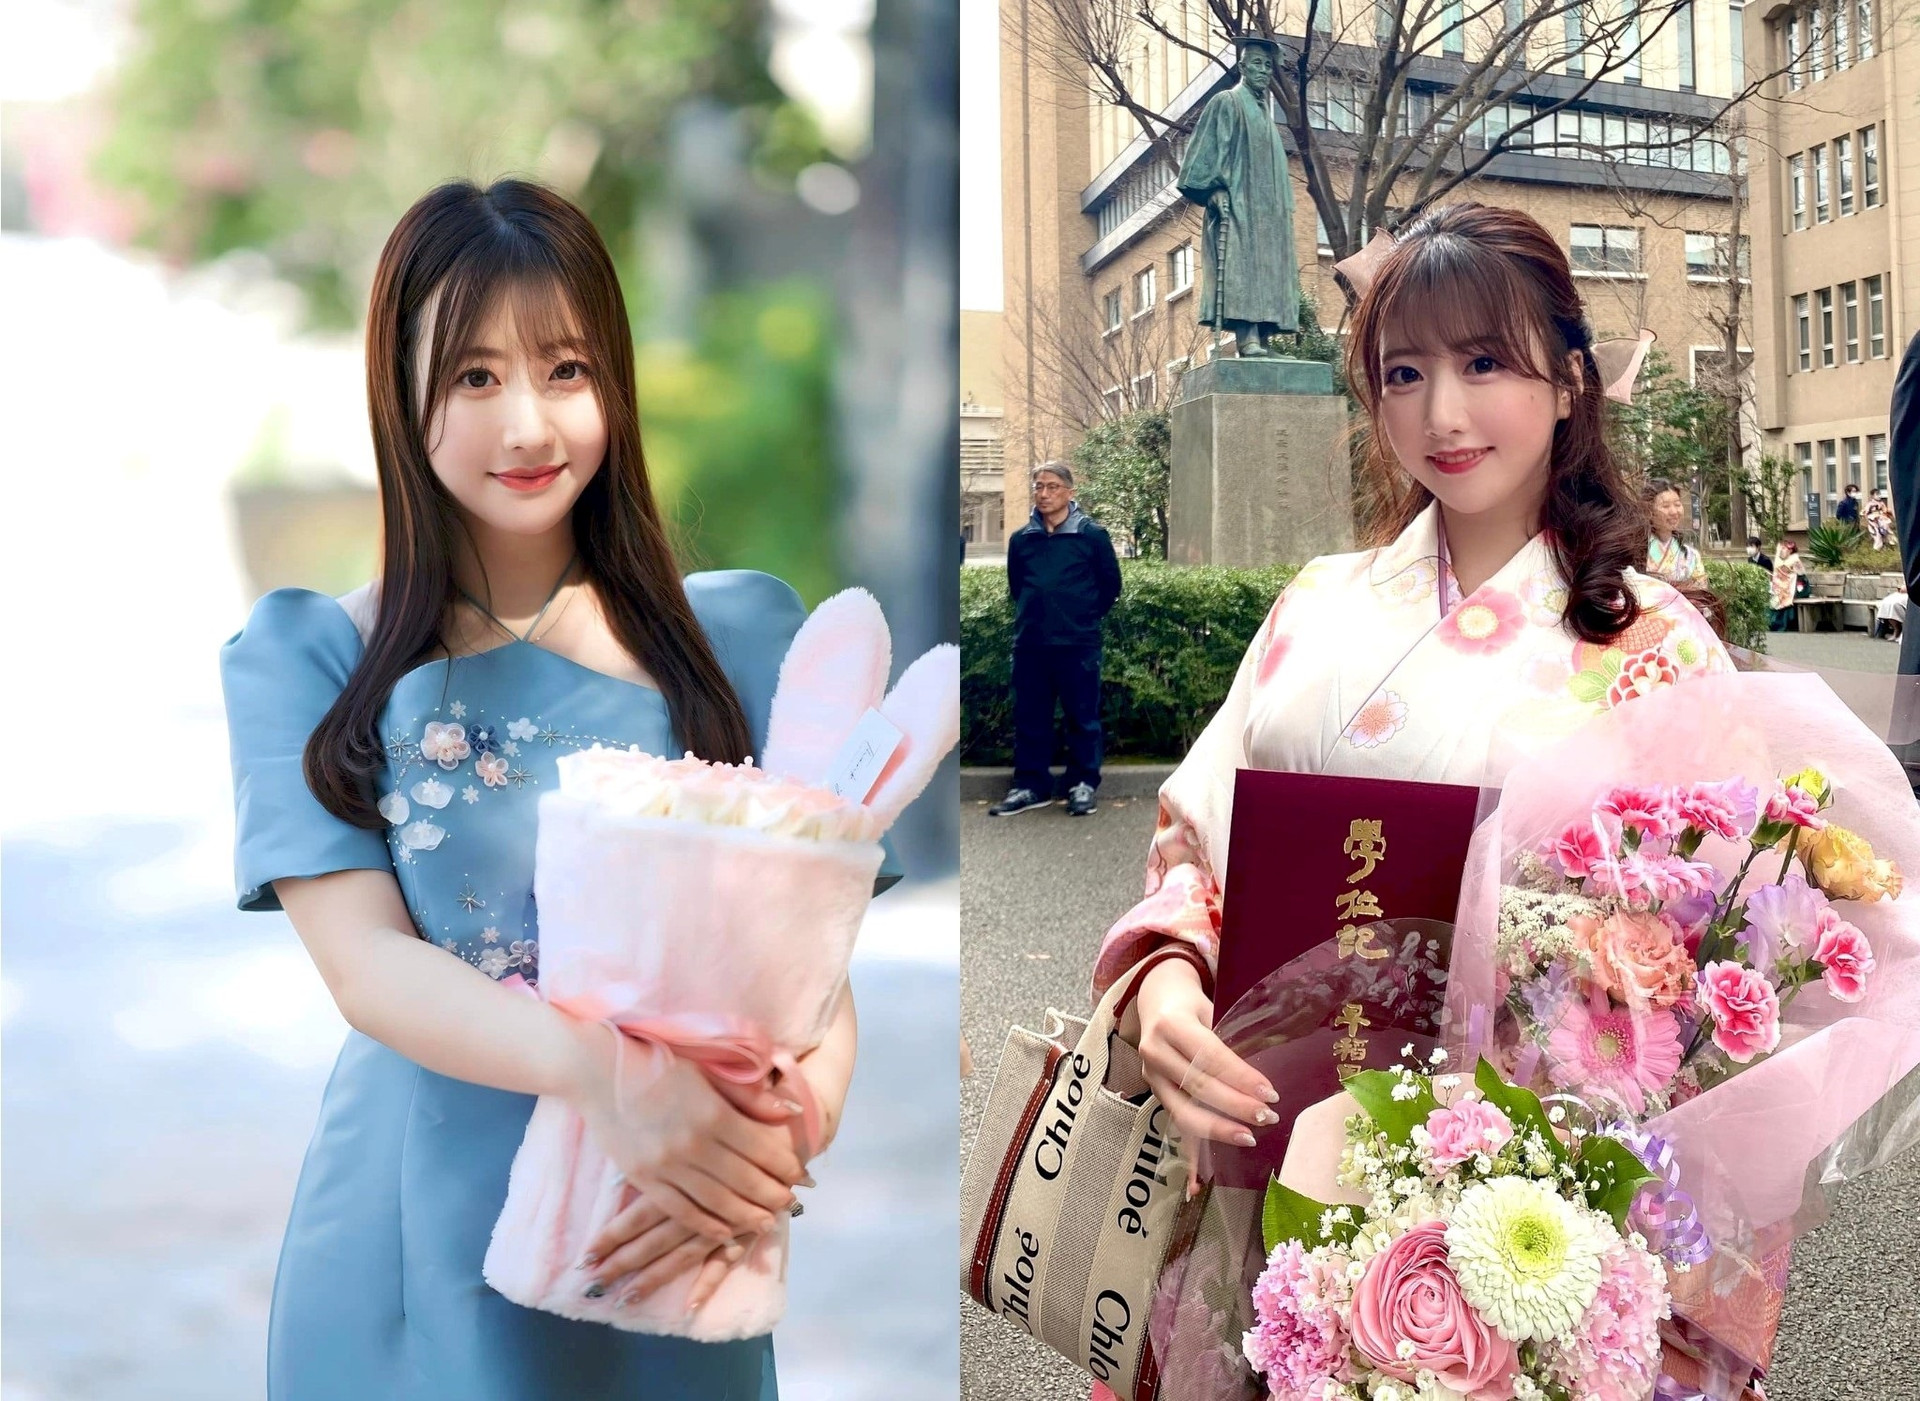 4 cô giáo Gen Z bất ngờ nổi tiếng trên mạng vì xinh như hot girl - 2